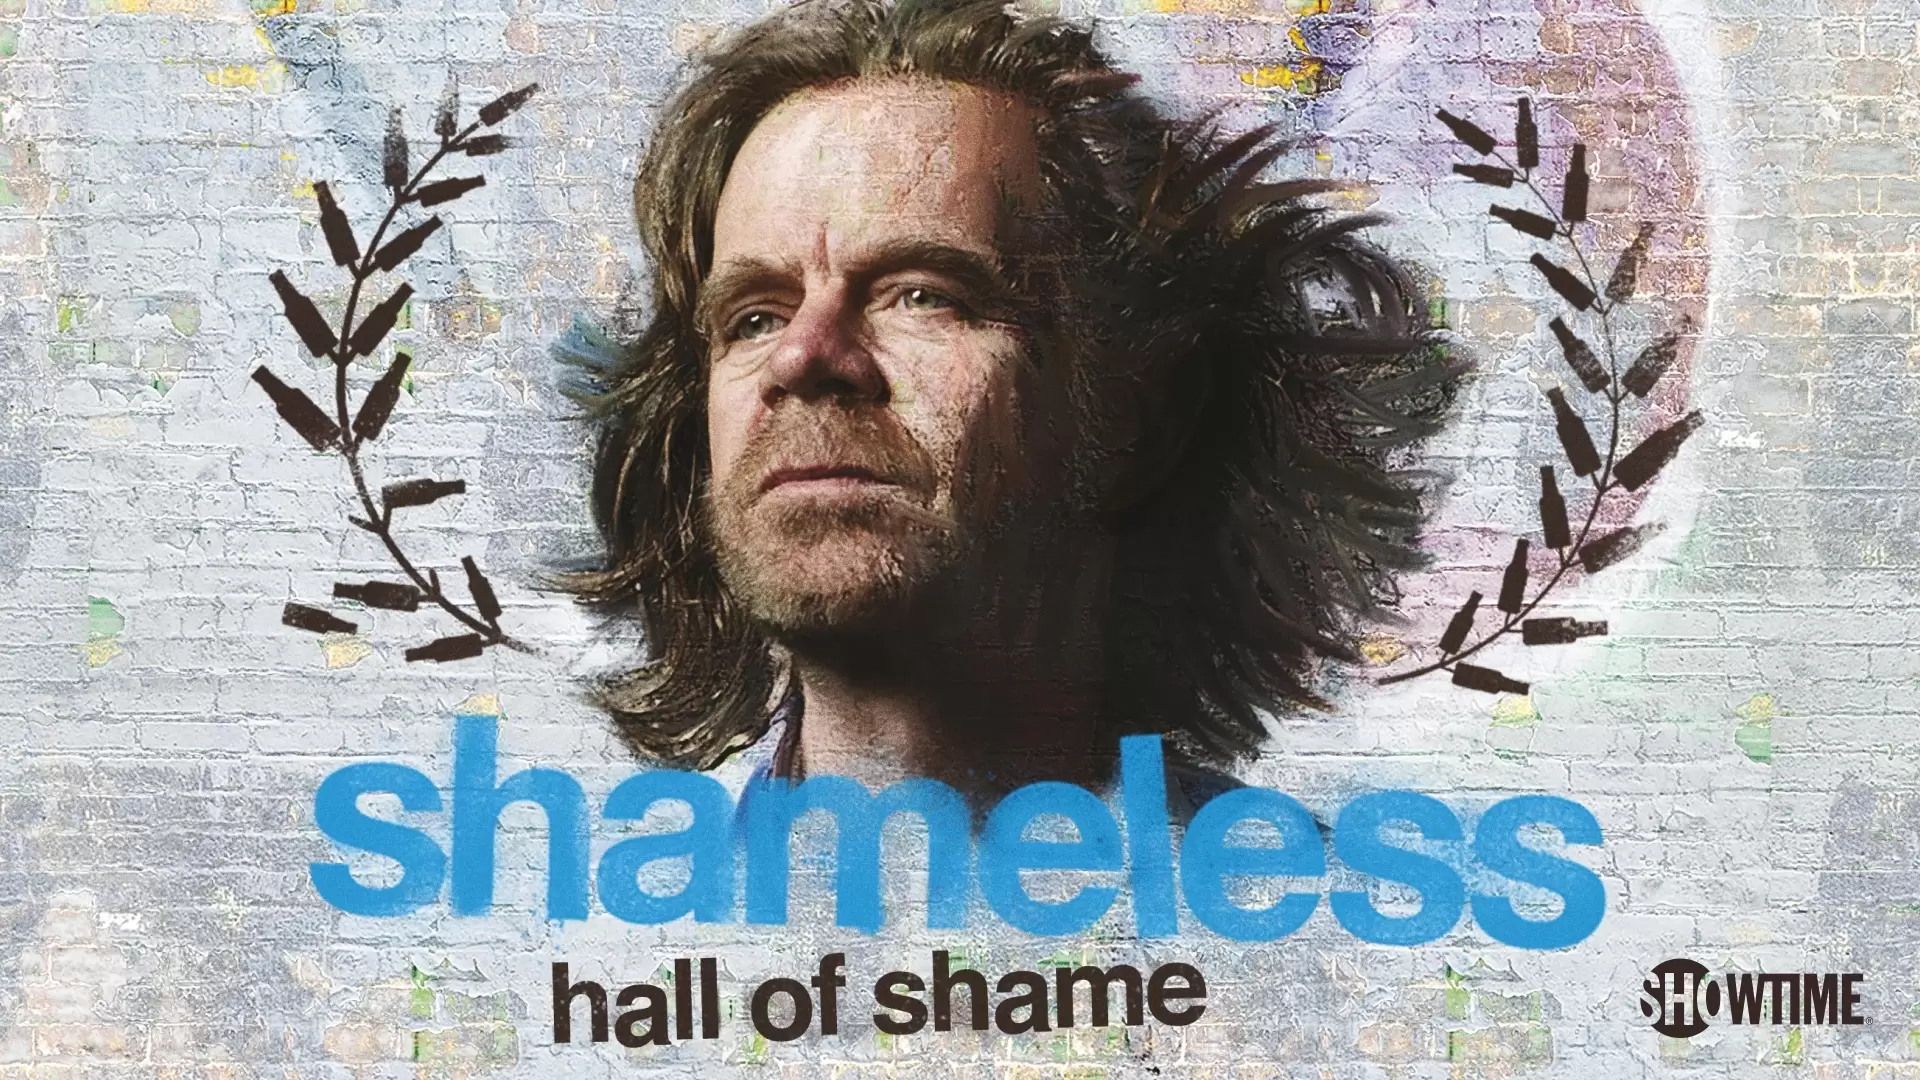 دانلود سریال Shameless Hall of Shame 2020 با زیرنویس فارسی